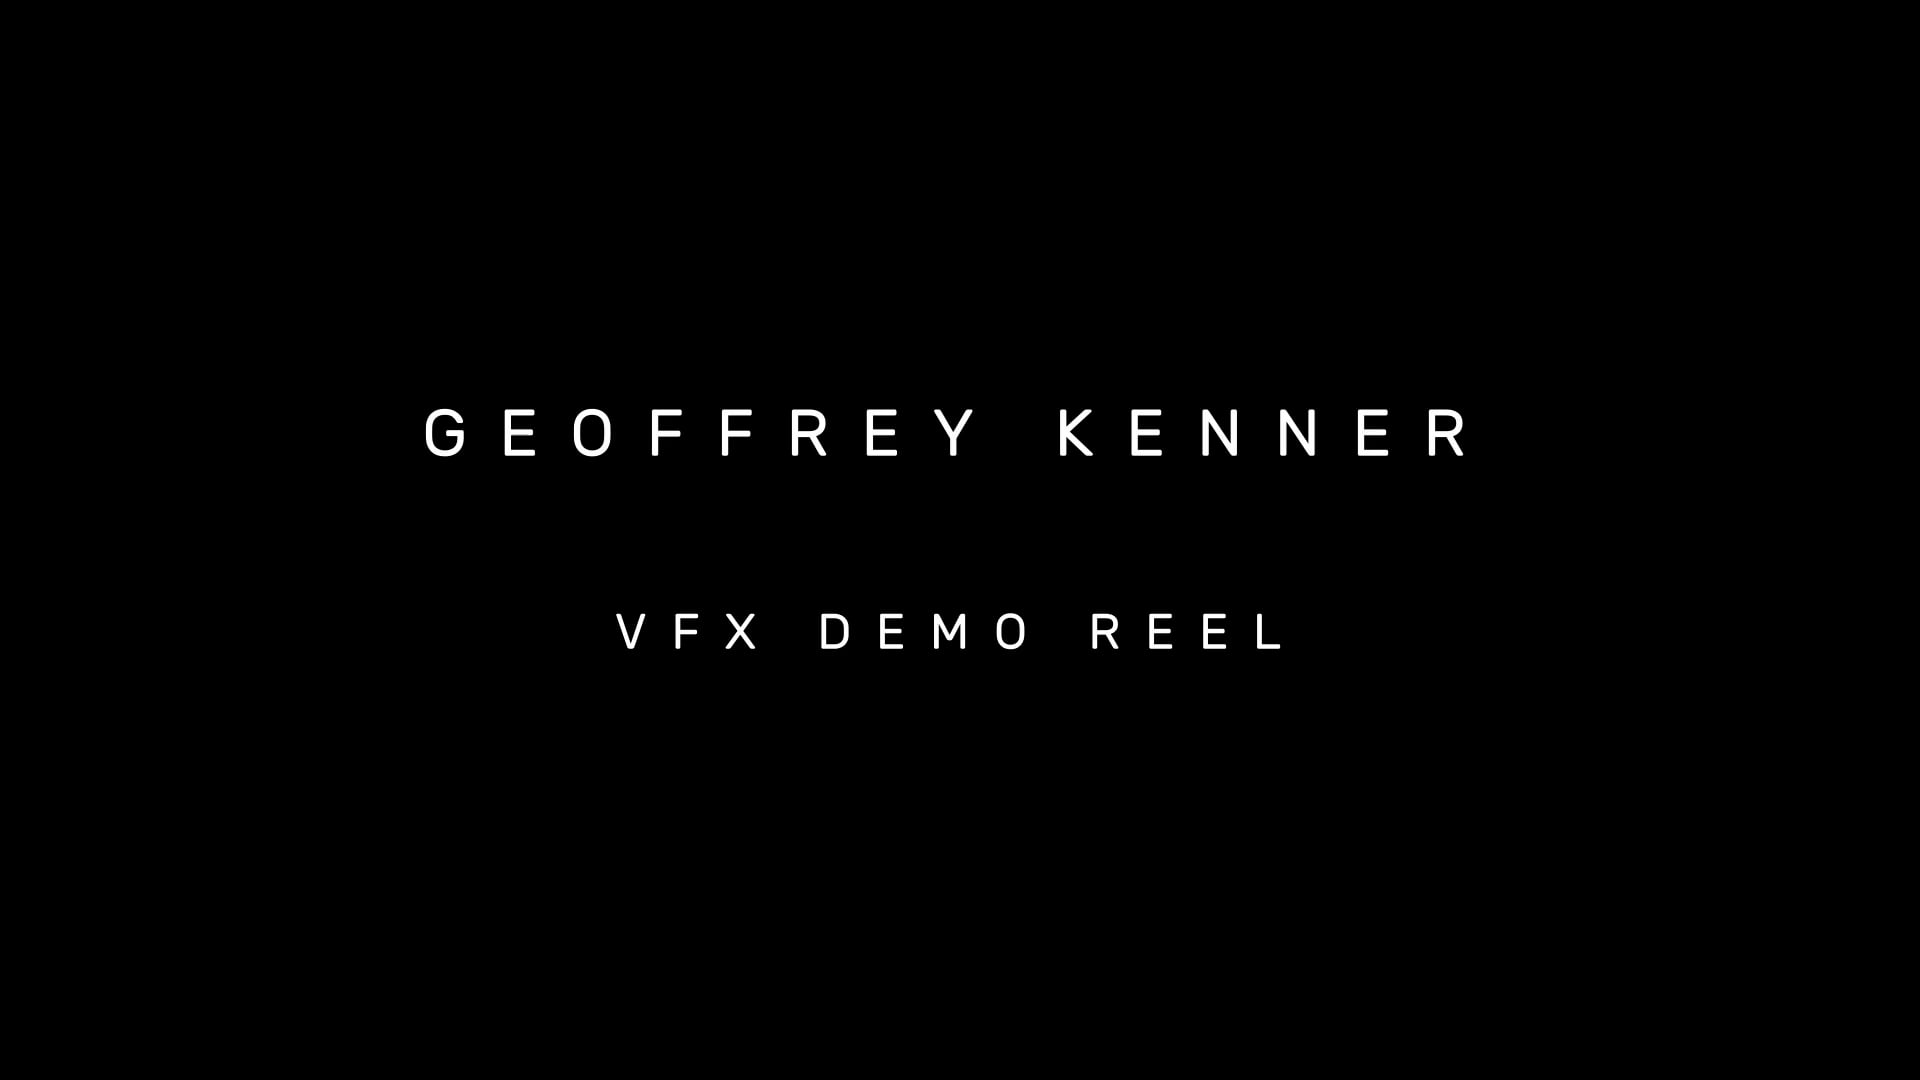 Geoffrey Kenner - VFX Demo Reel 2019